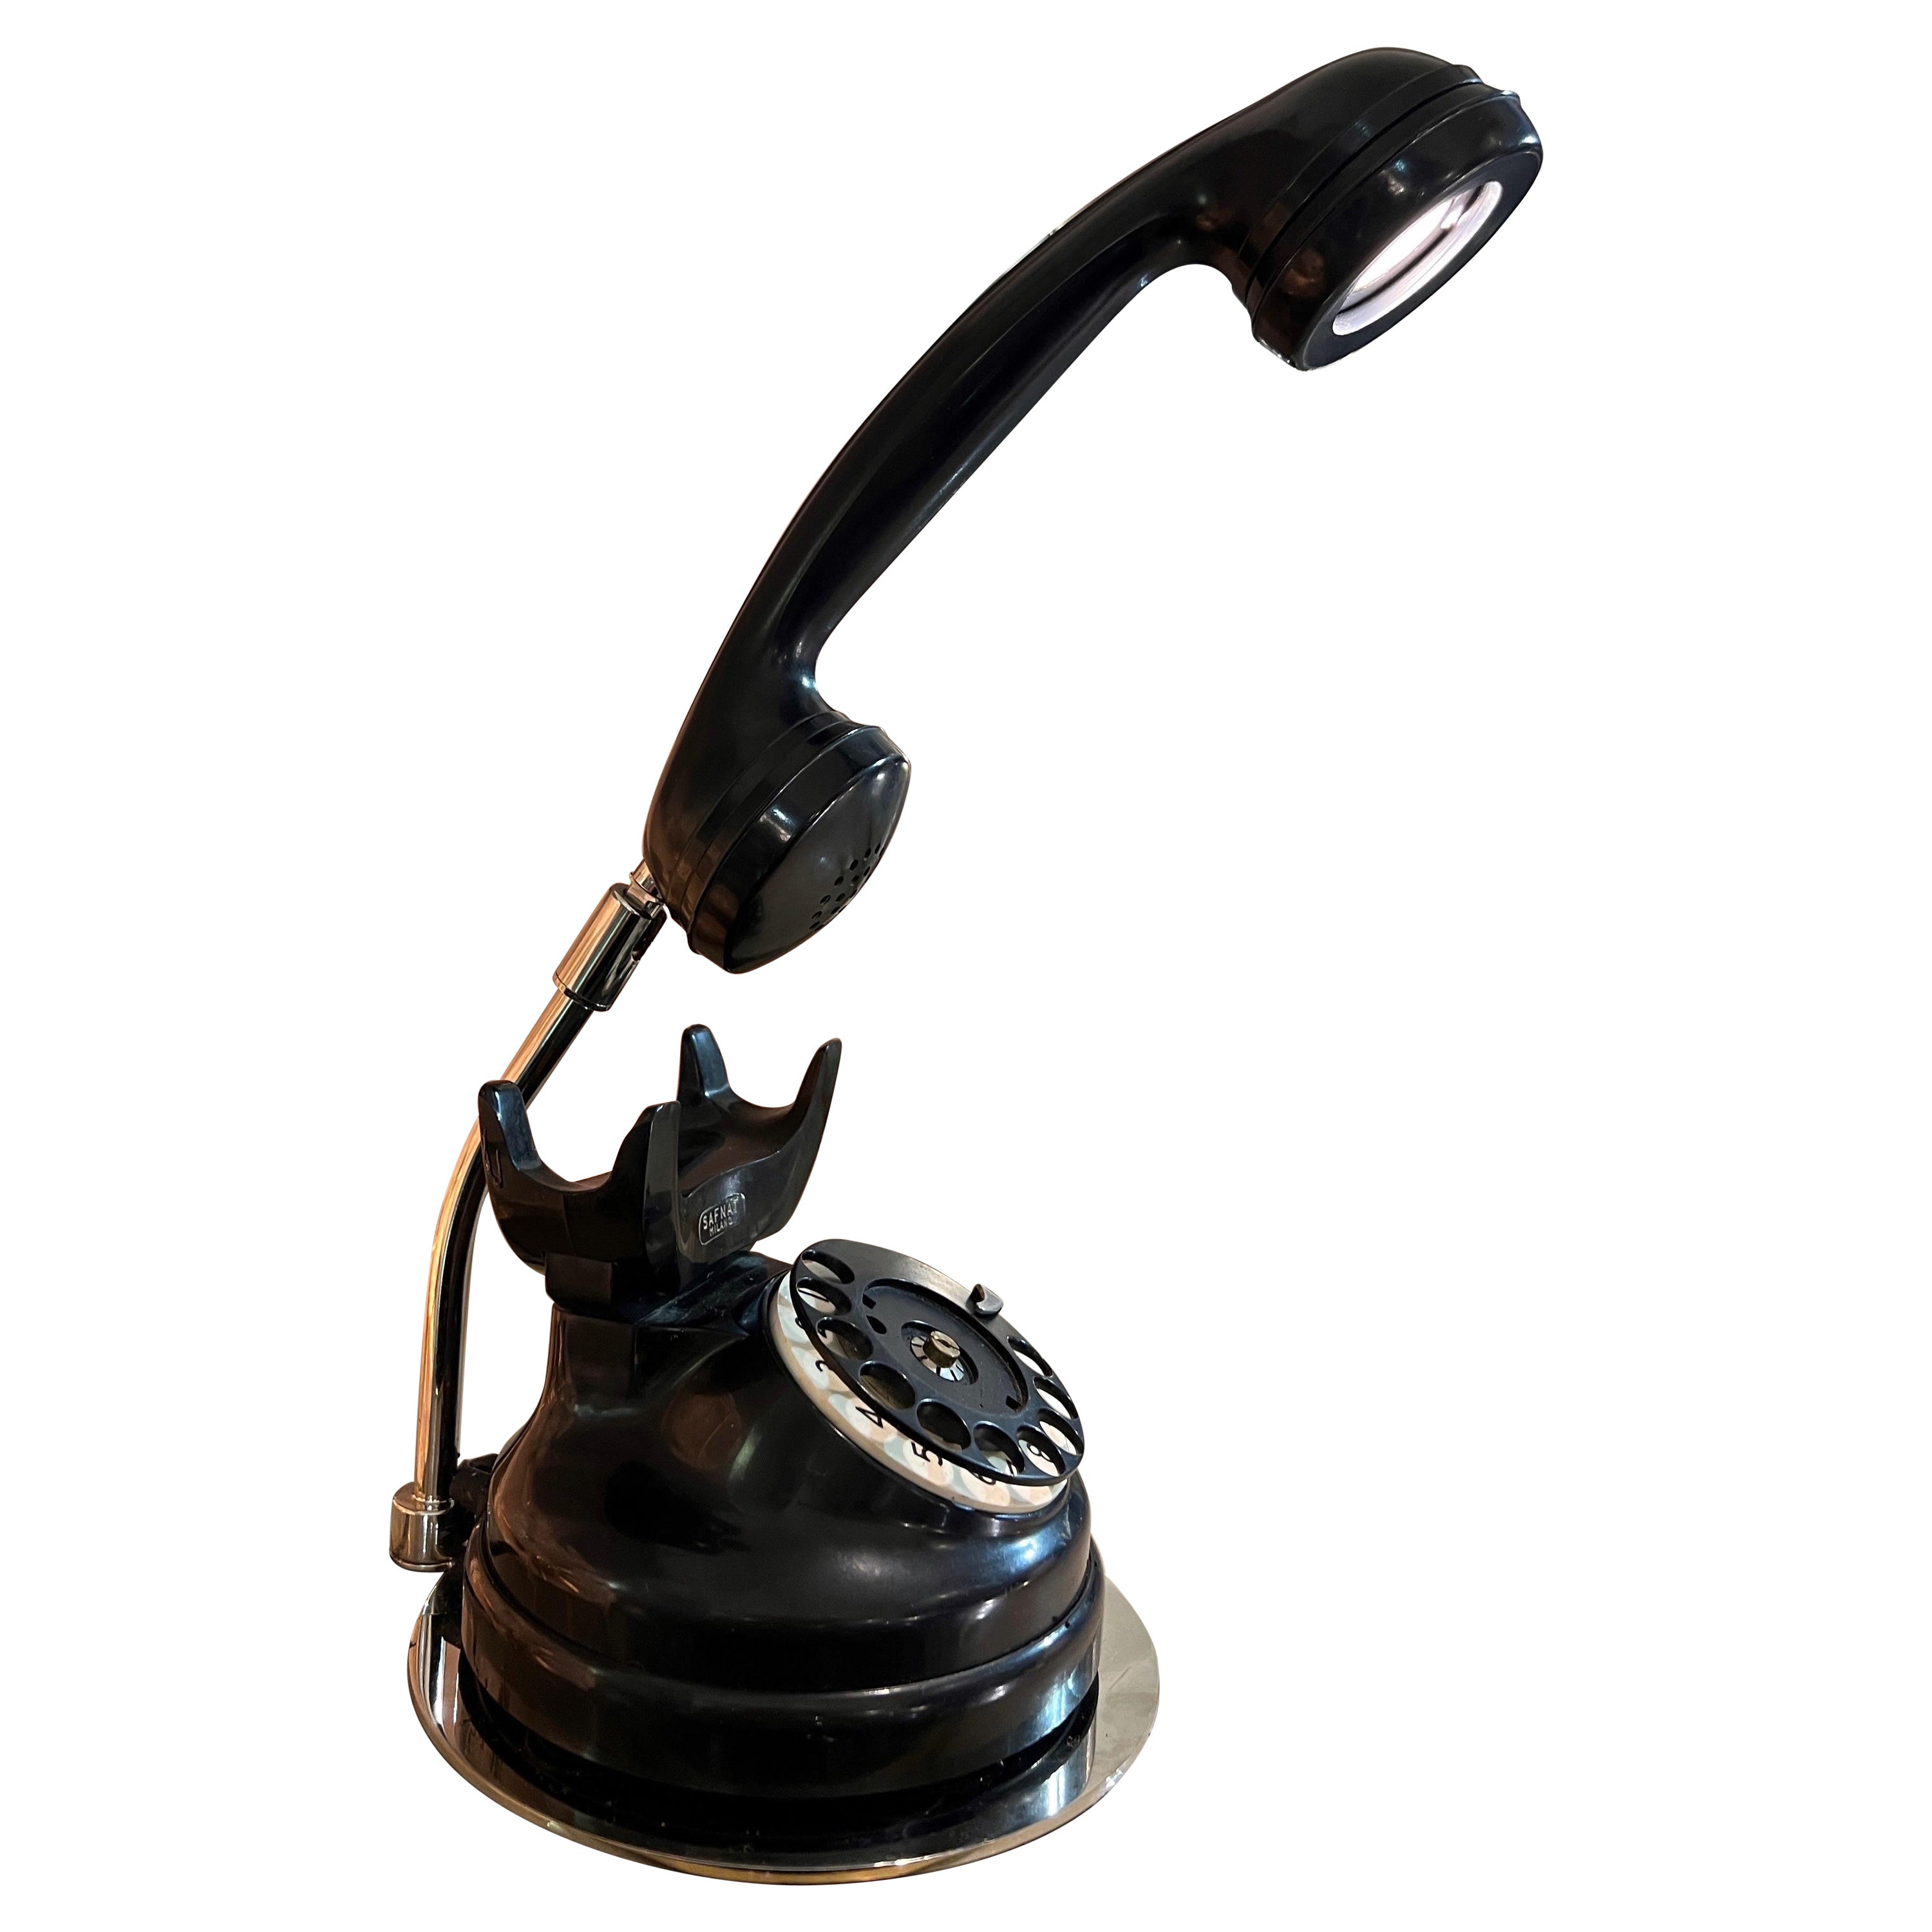 Bakelite Telephone - 14 For Sale on 1stDibs | bakelite phone for ...